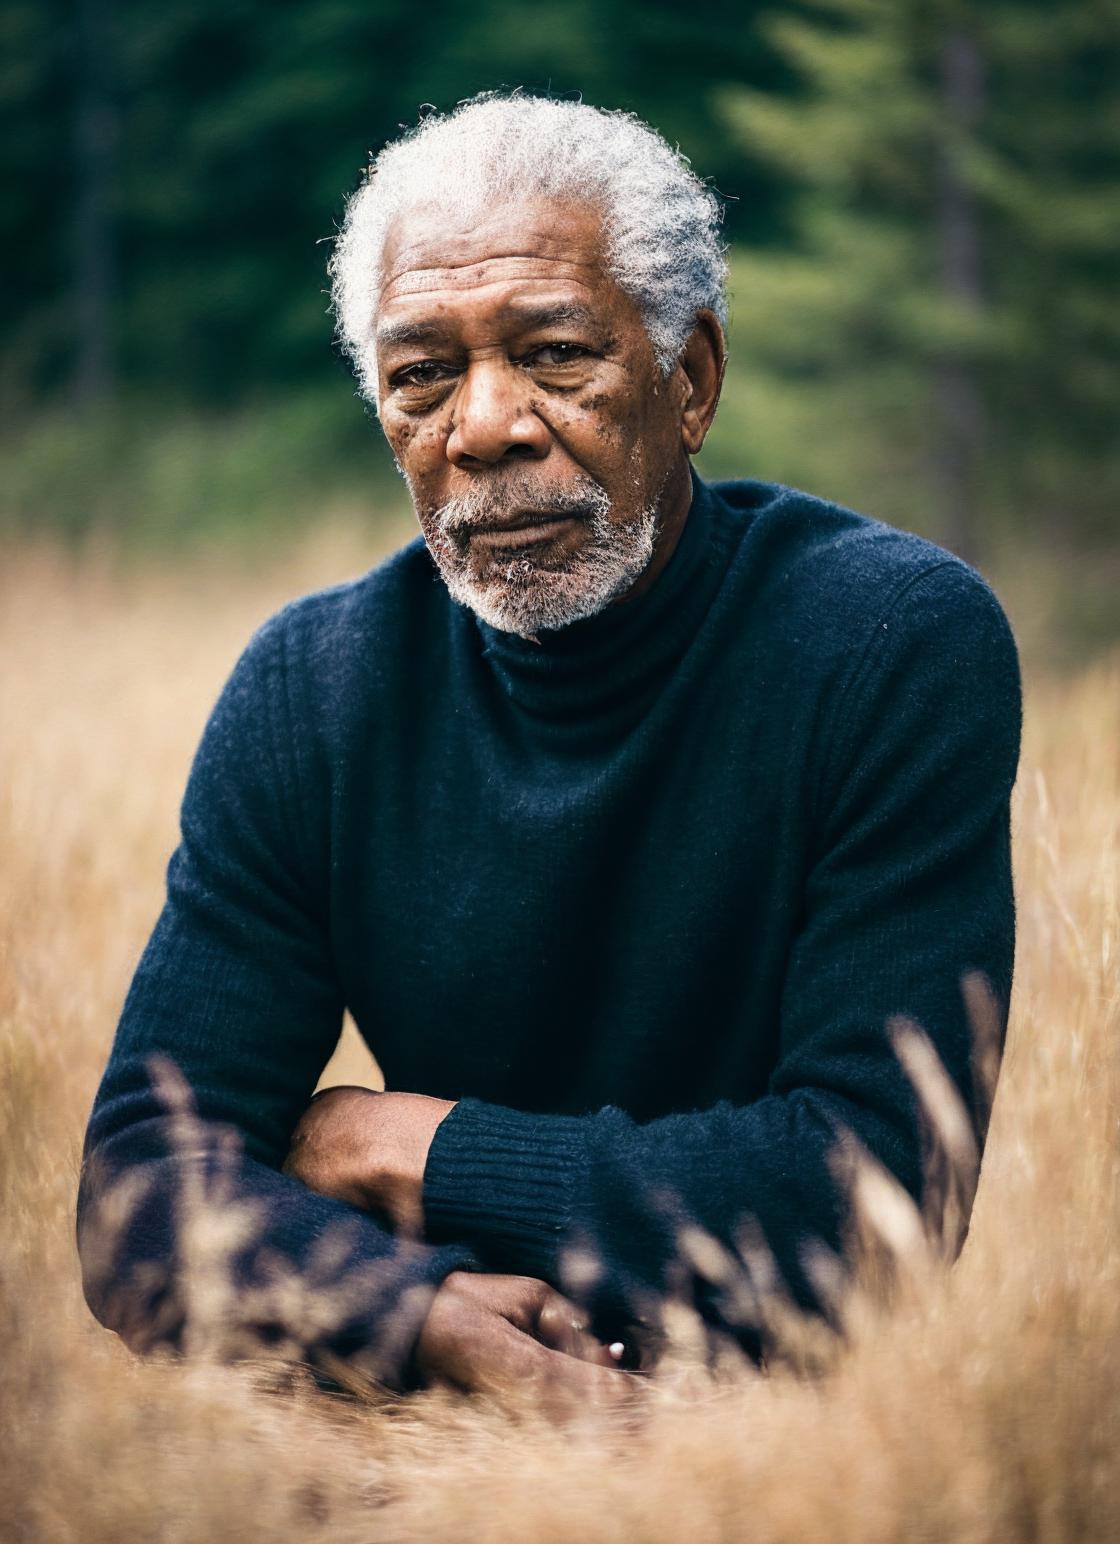 Morgan Freeman image by malcolmrey